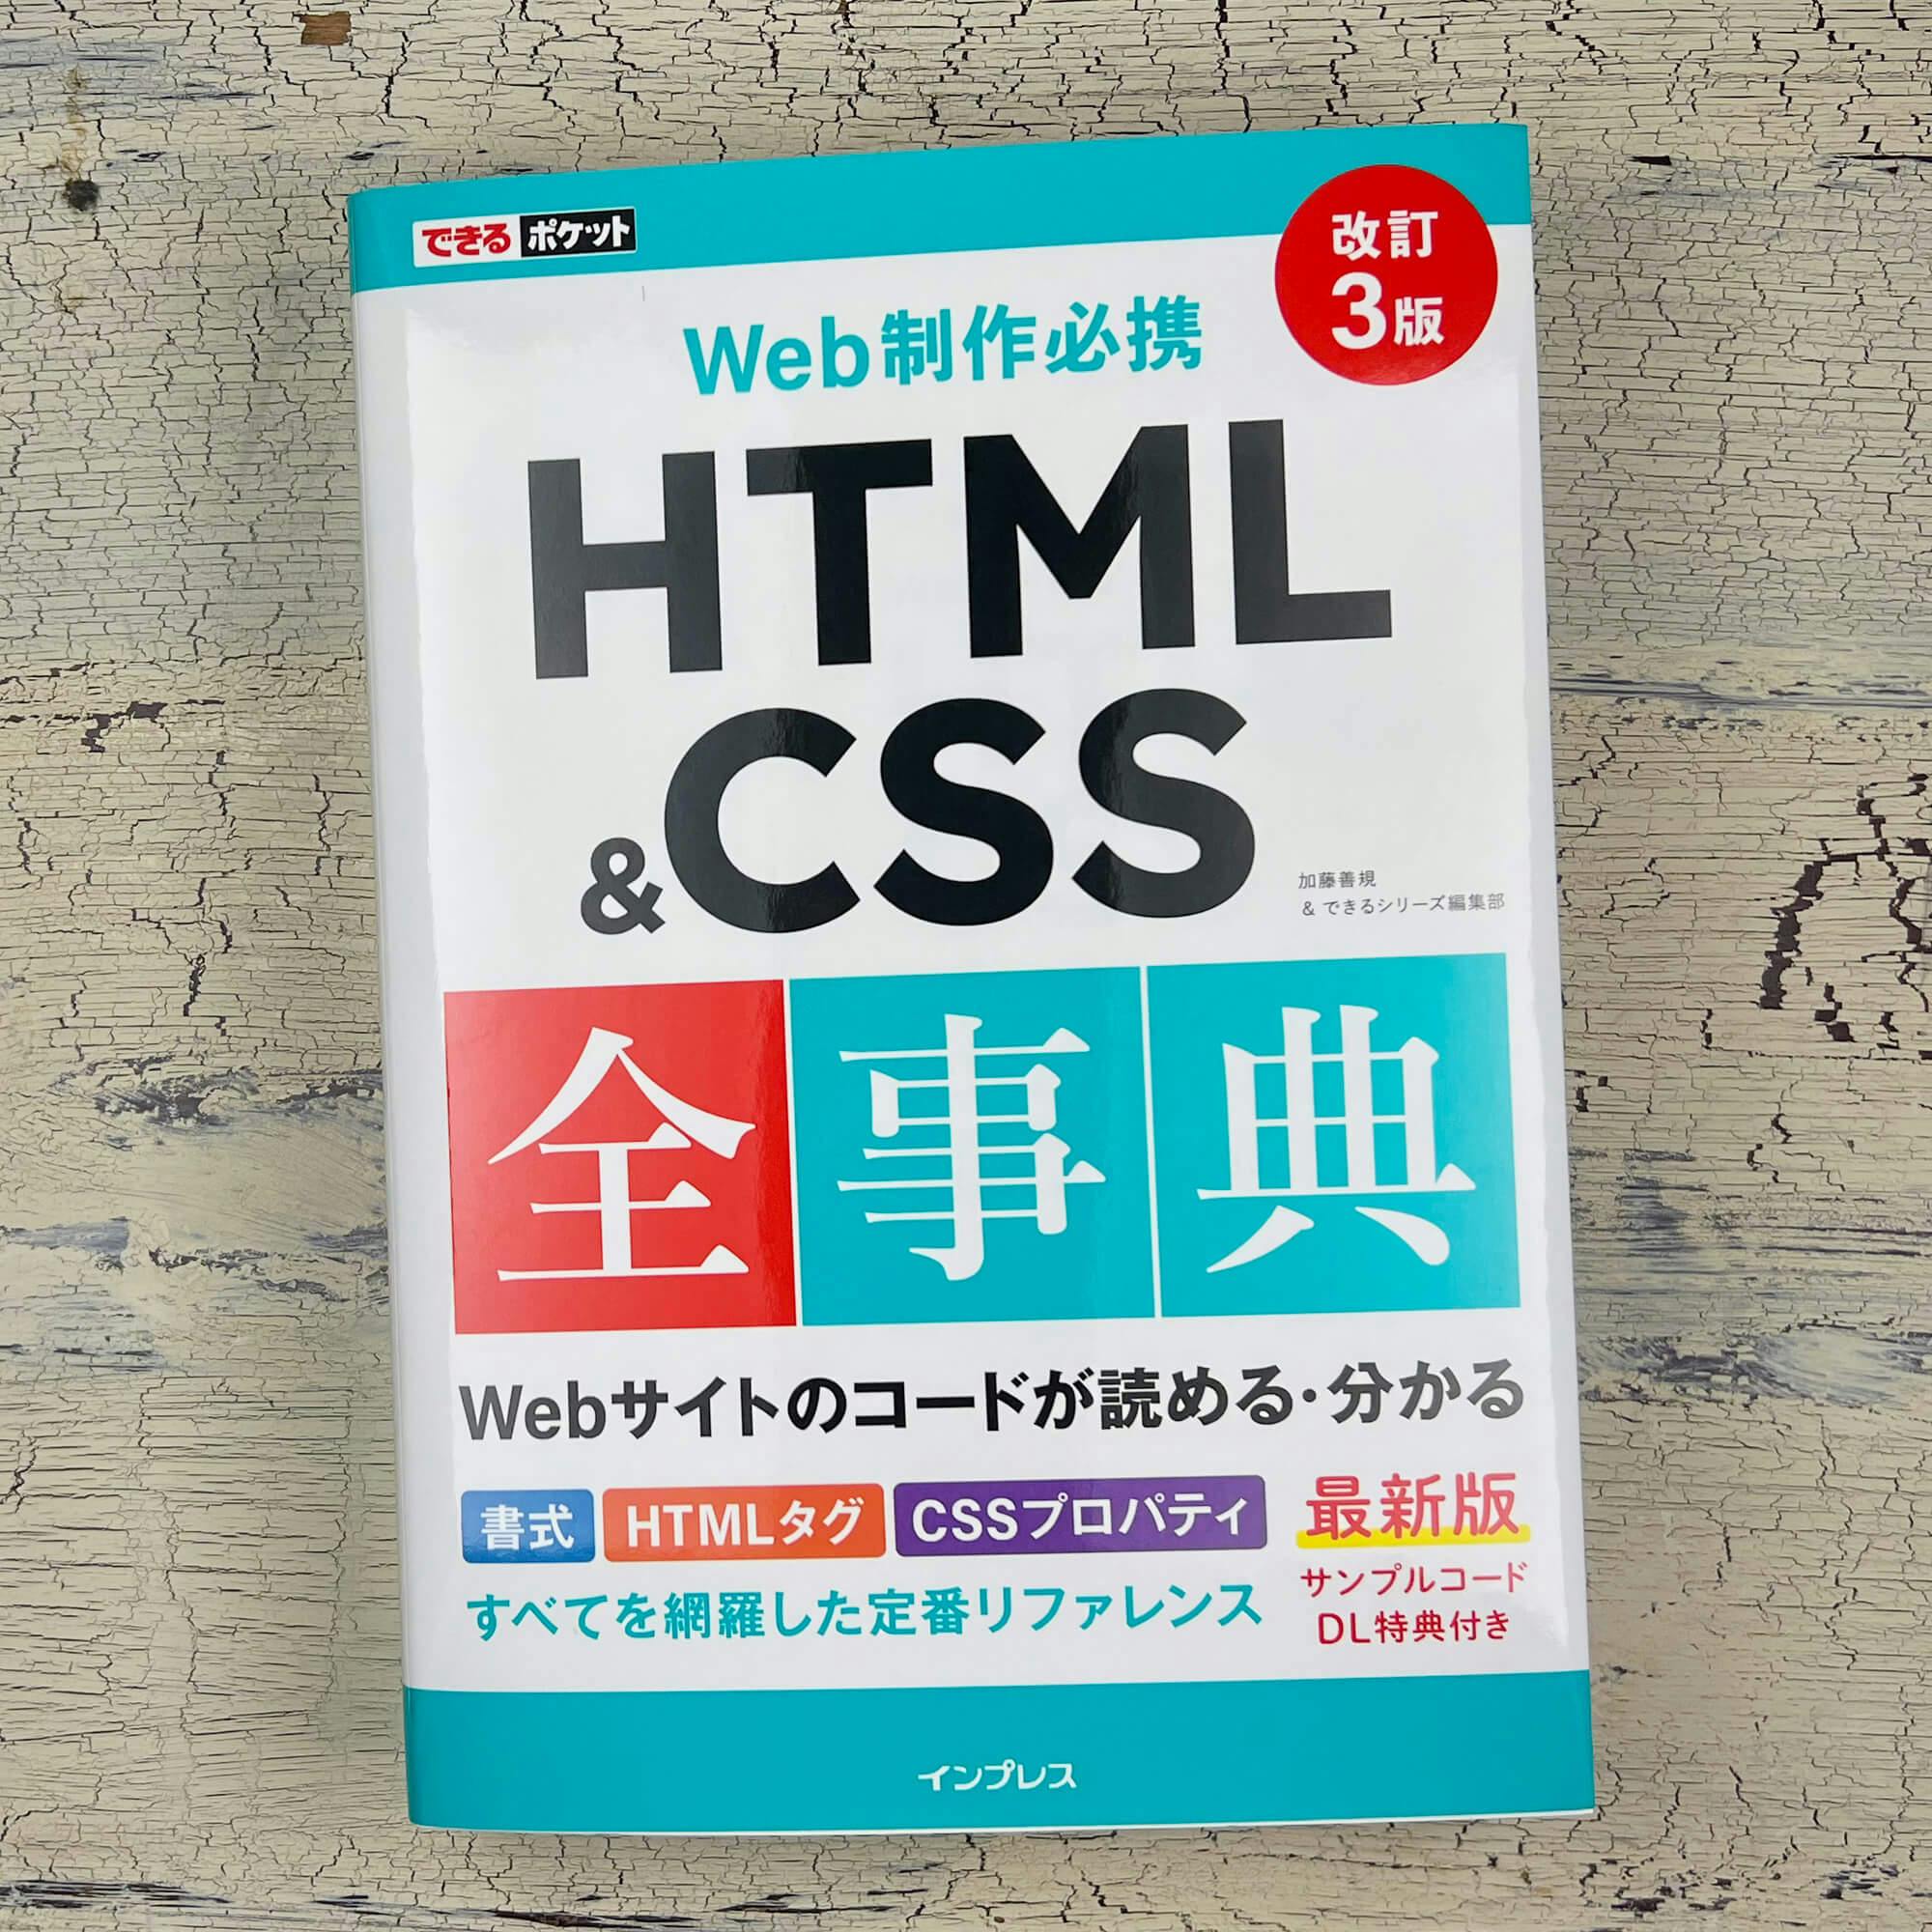 「できるポケット HTML&CSS 全事典 改訂 3 版」見本誌